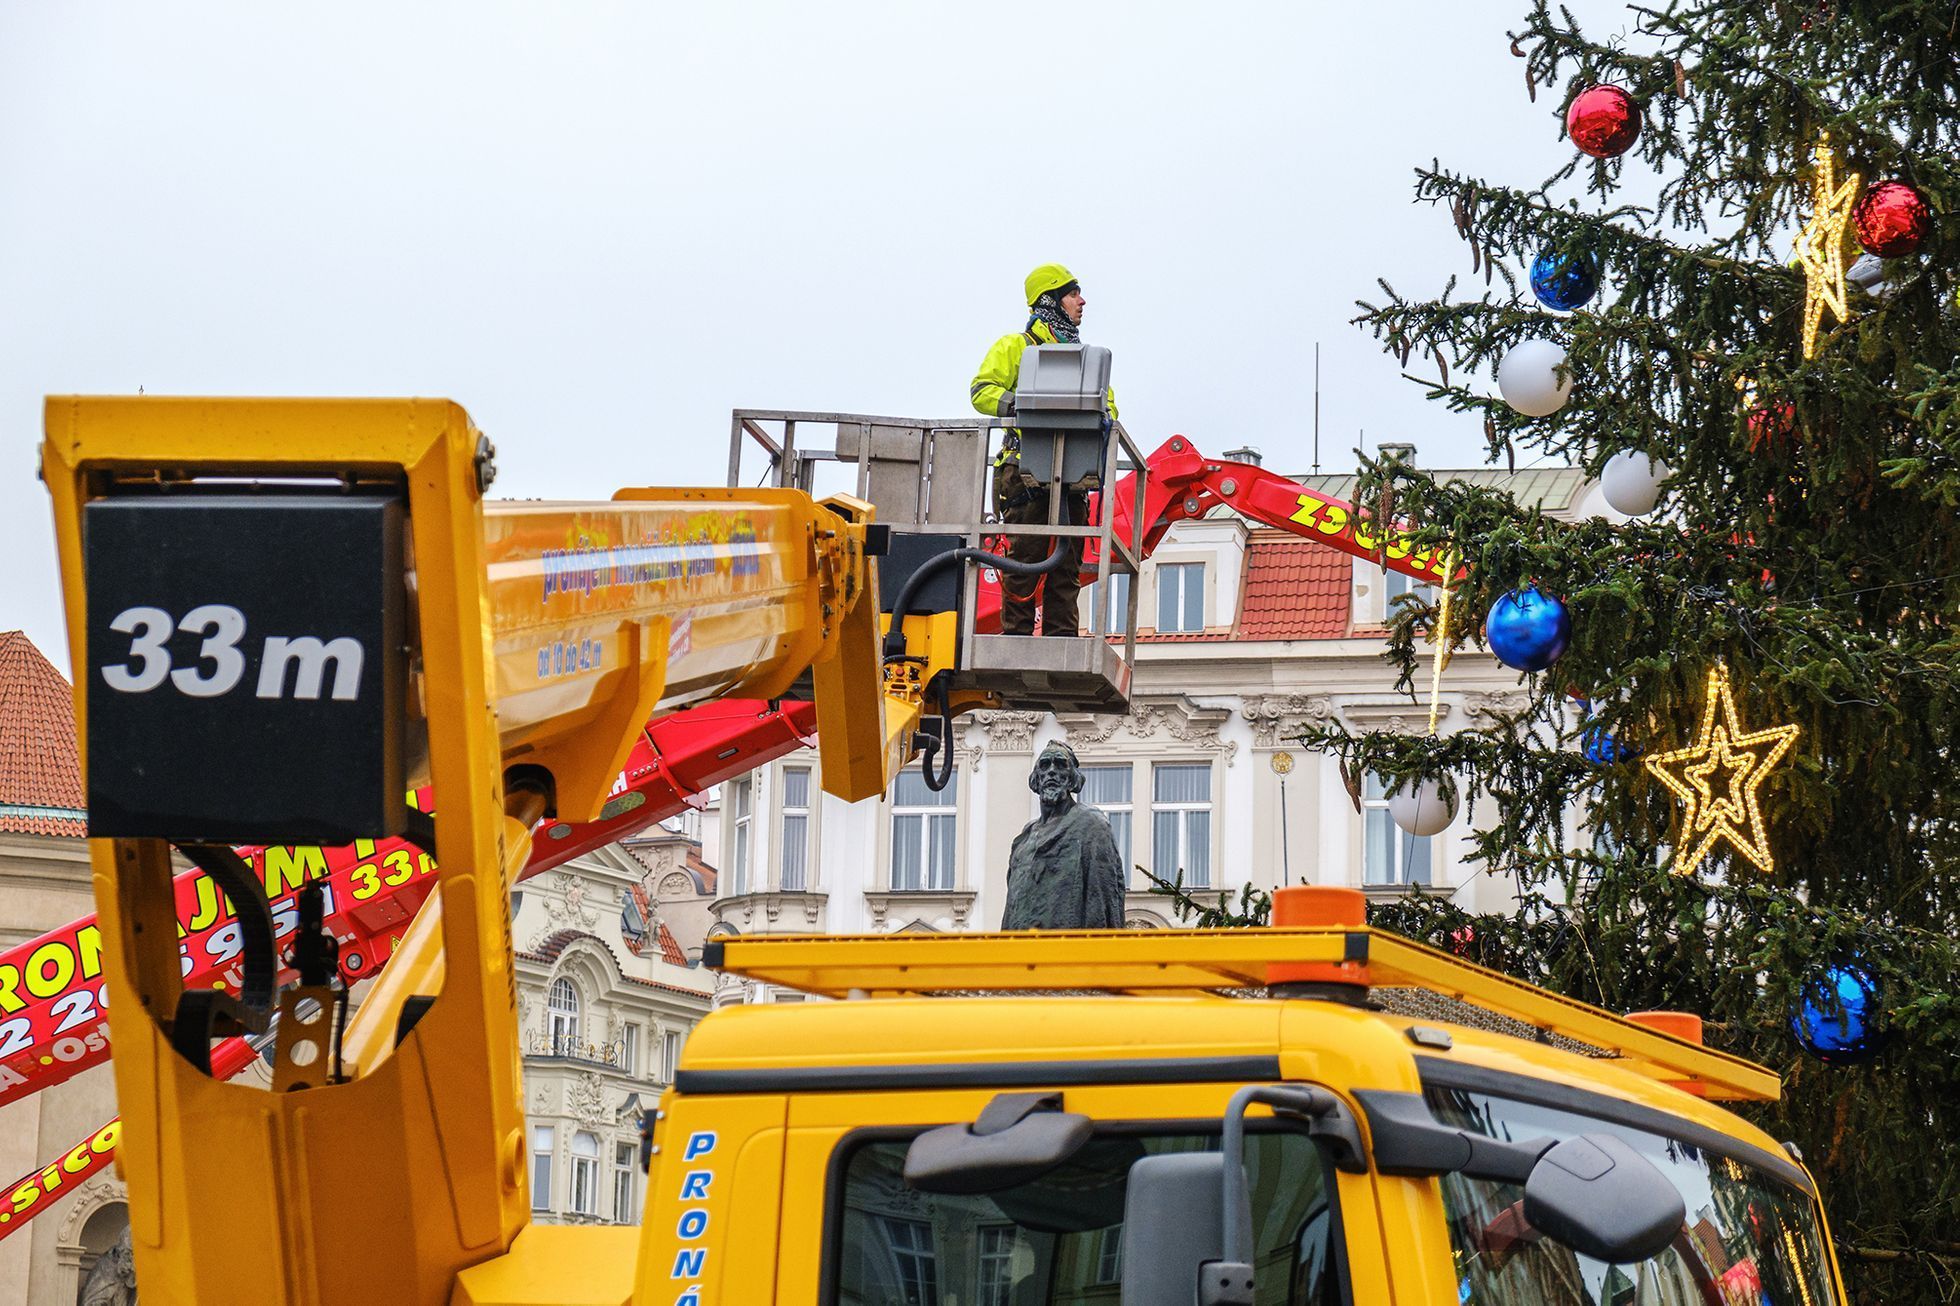 Vánoční Praha 2020: jak se zdobil strom na Staroměstském náměstí